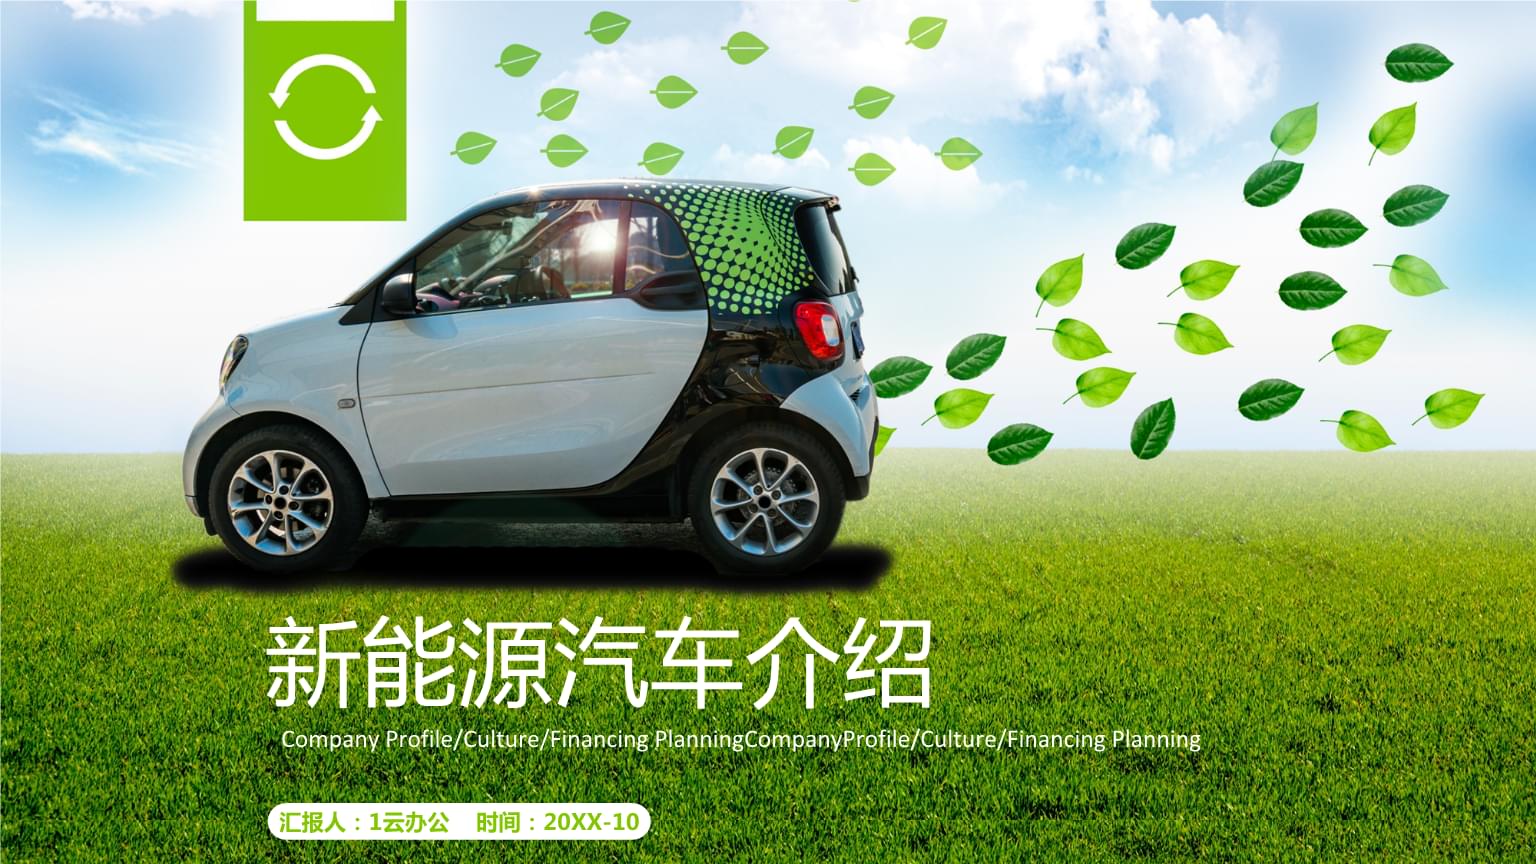 南京电动车展会2016_2014南京国际博览中心电动车展会是第几届_2016常州电动车展